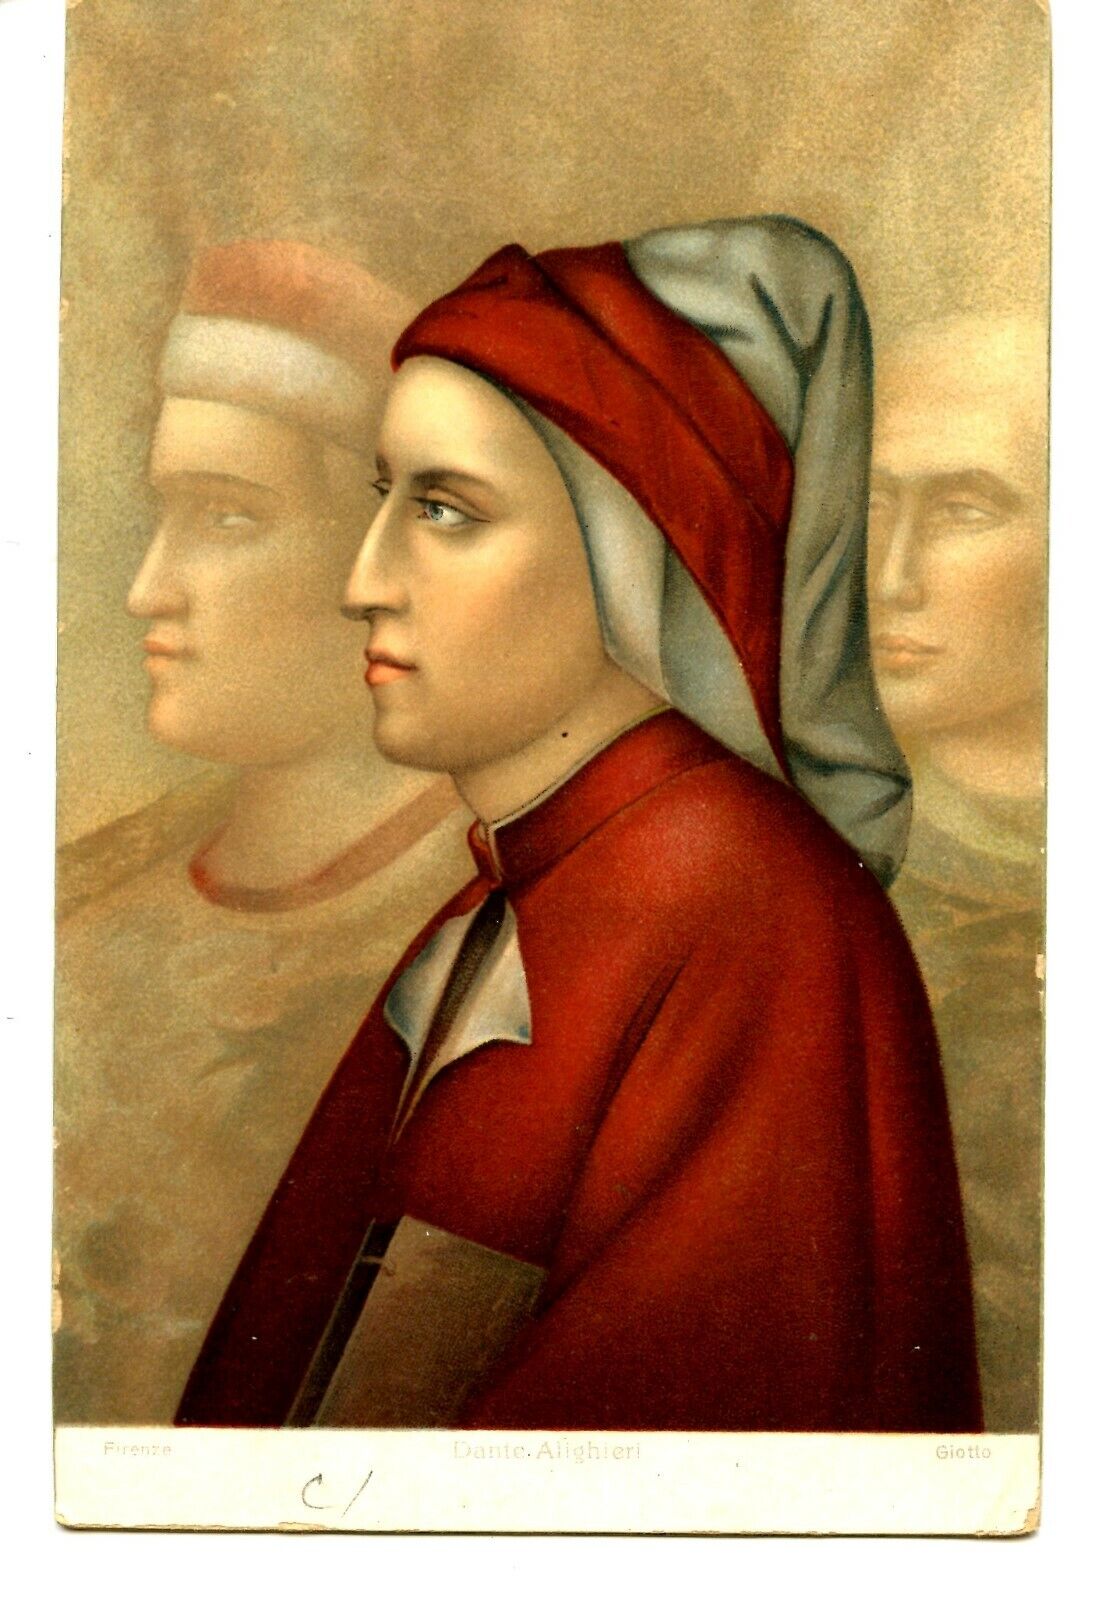 Dante Alighieri Italian Poet-Giotto Artwork Painting-Stengel Vintage Postcard